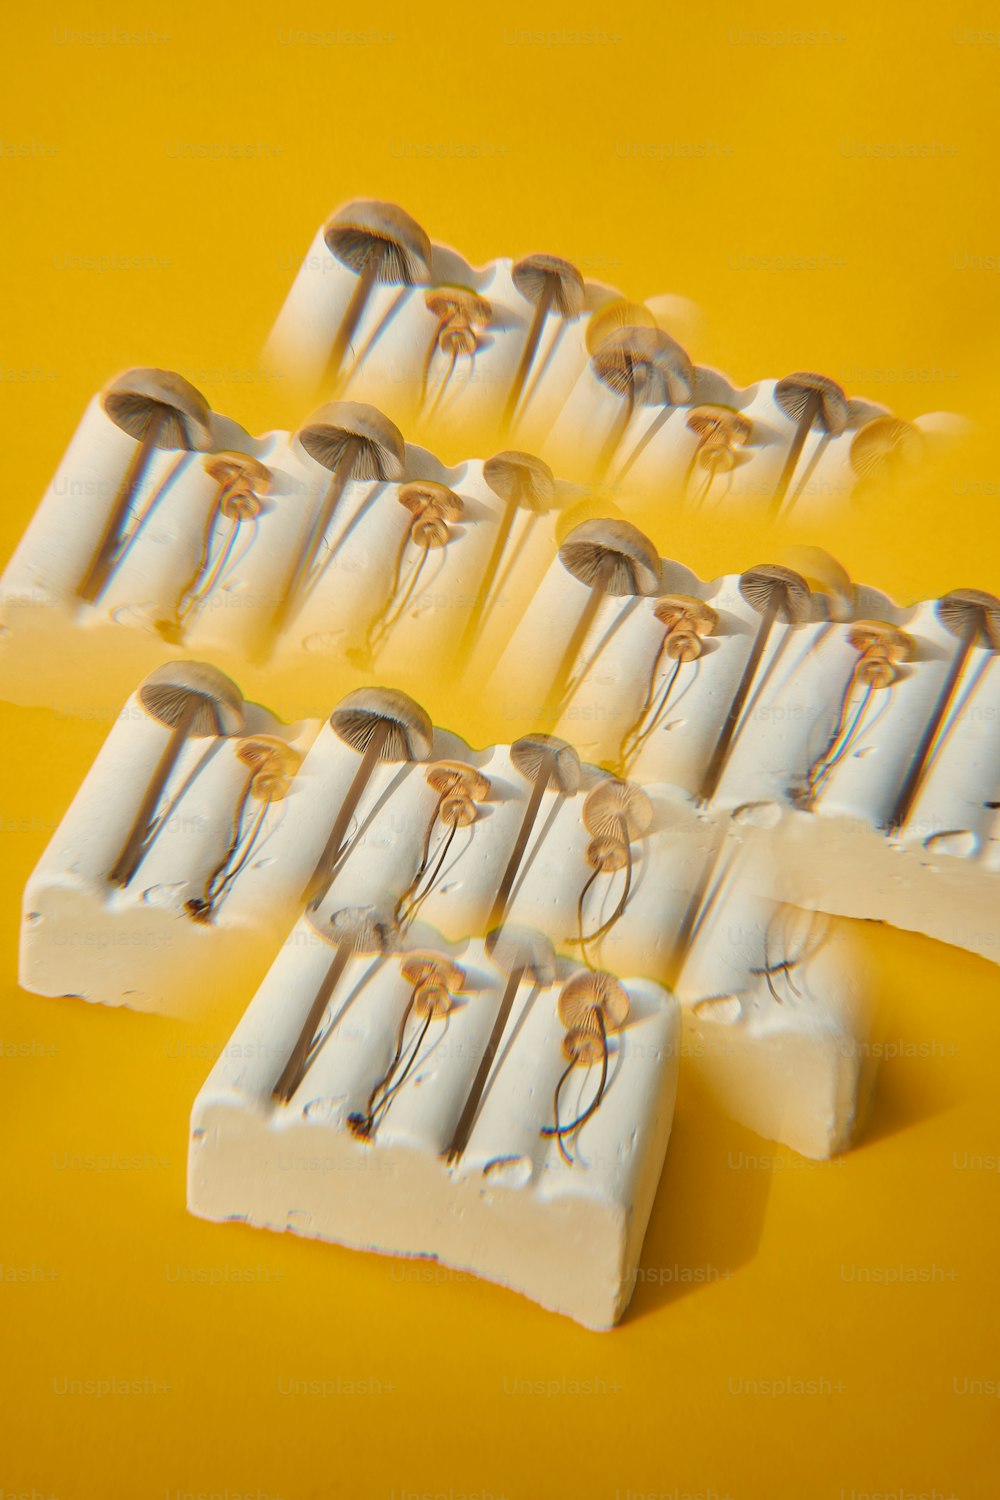 Un primo piano di un gruppo di spazzolini da denti su uno sfondo giallo